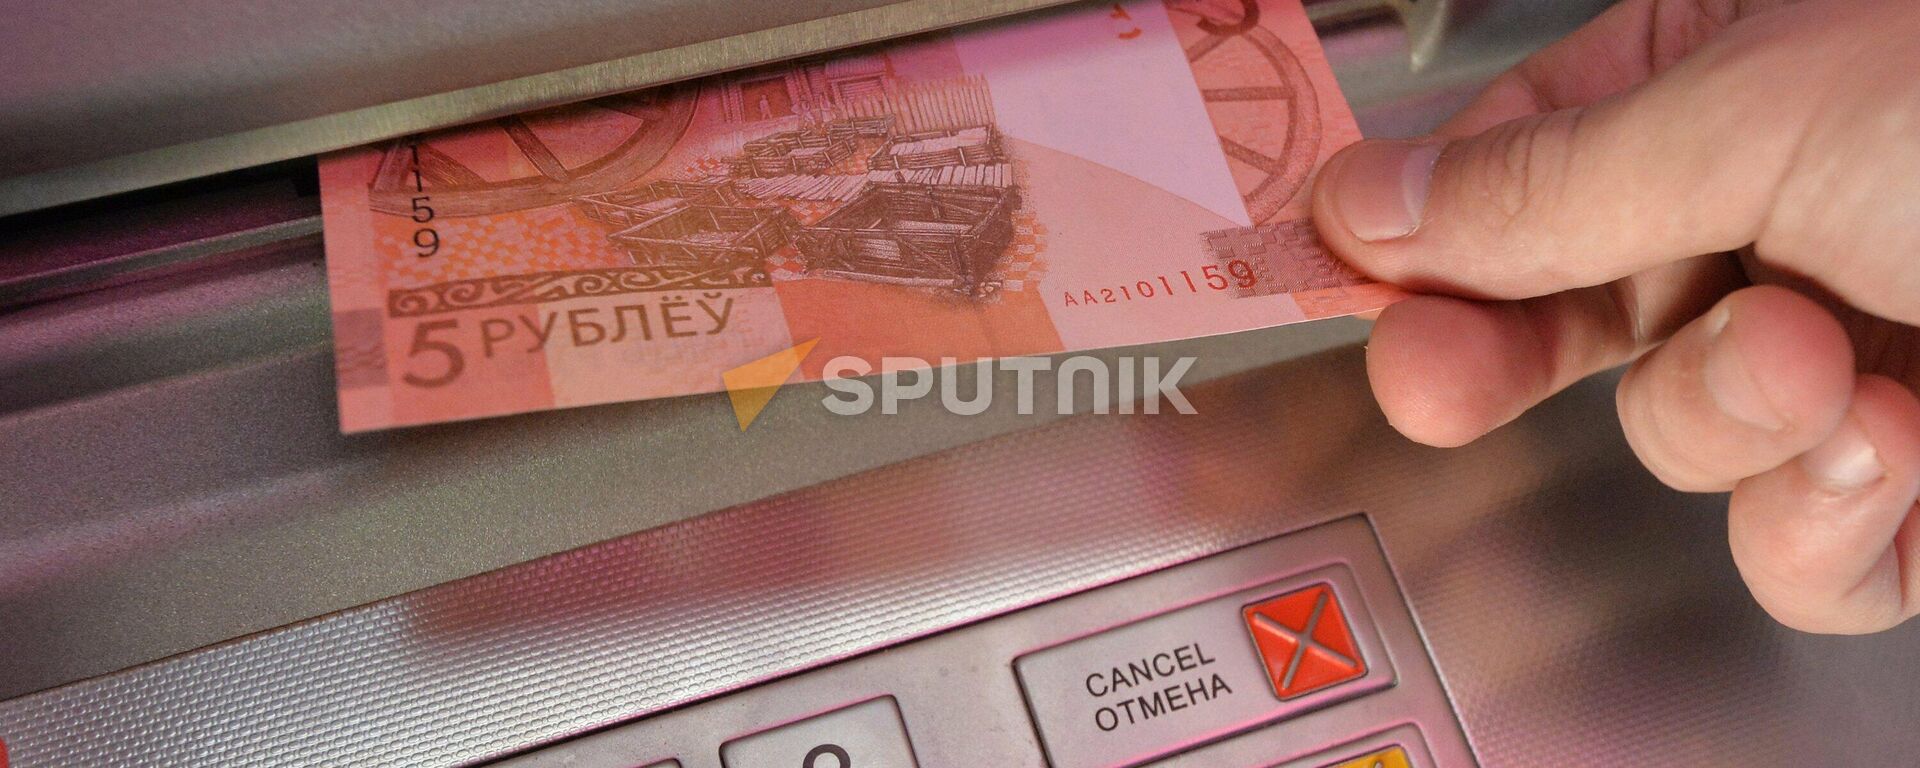 Что нужно знать, чтобы не стать жертвой киберпреступников - видео - Sputnik Беларусь, 1920, 23.11.2021